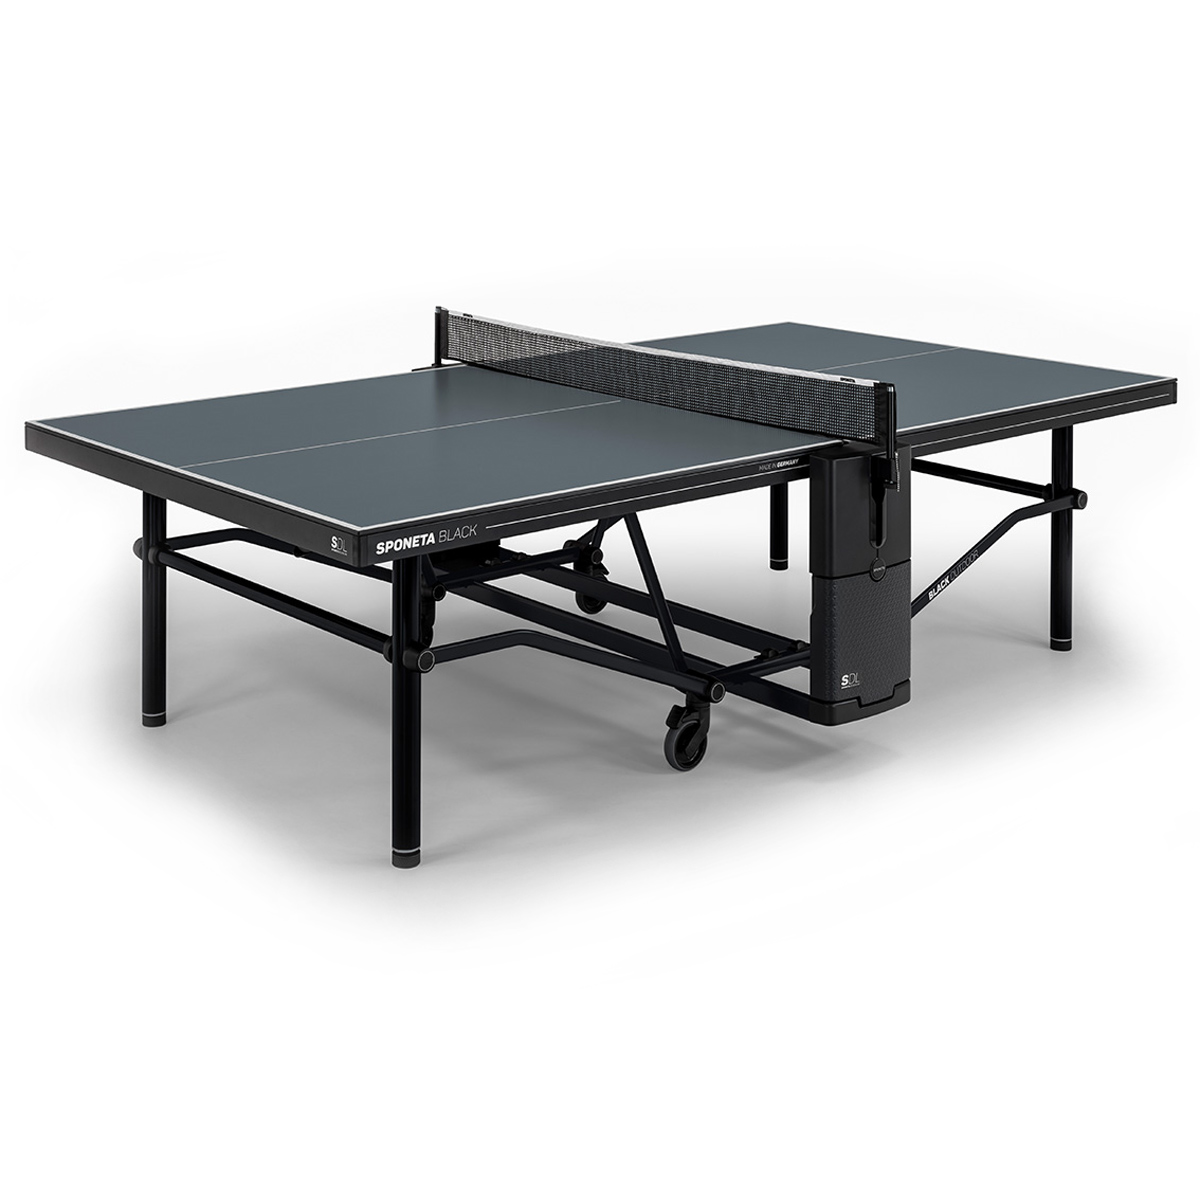 Sponeta Tisch SDL Black Outdoor grau